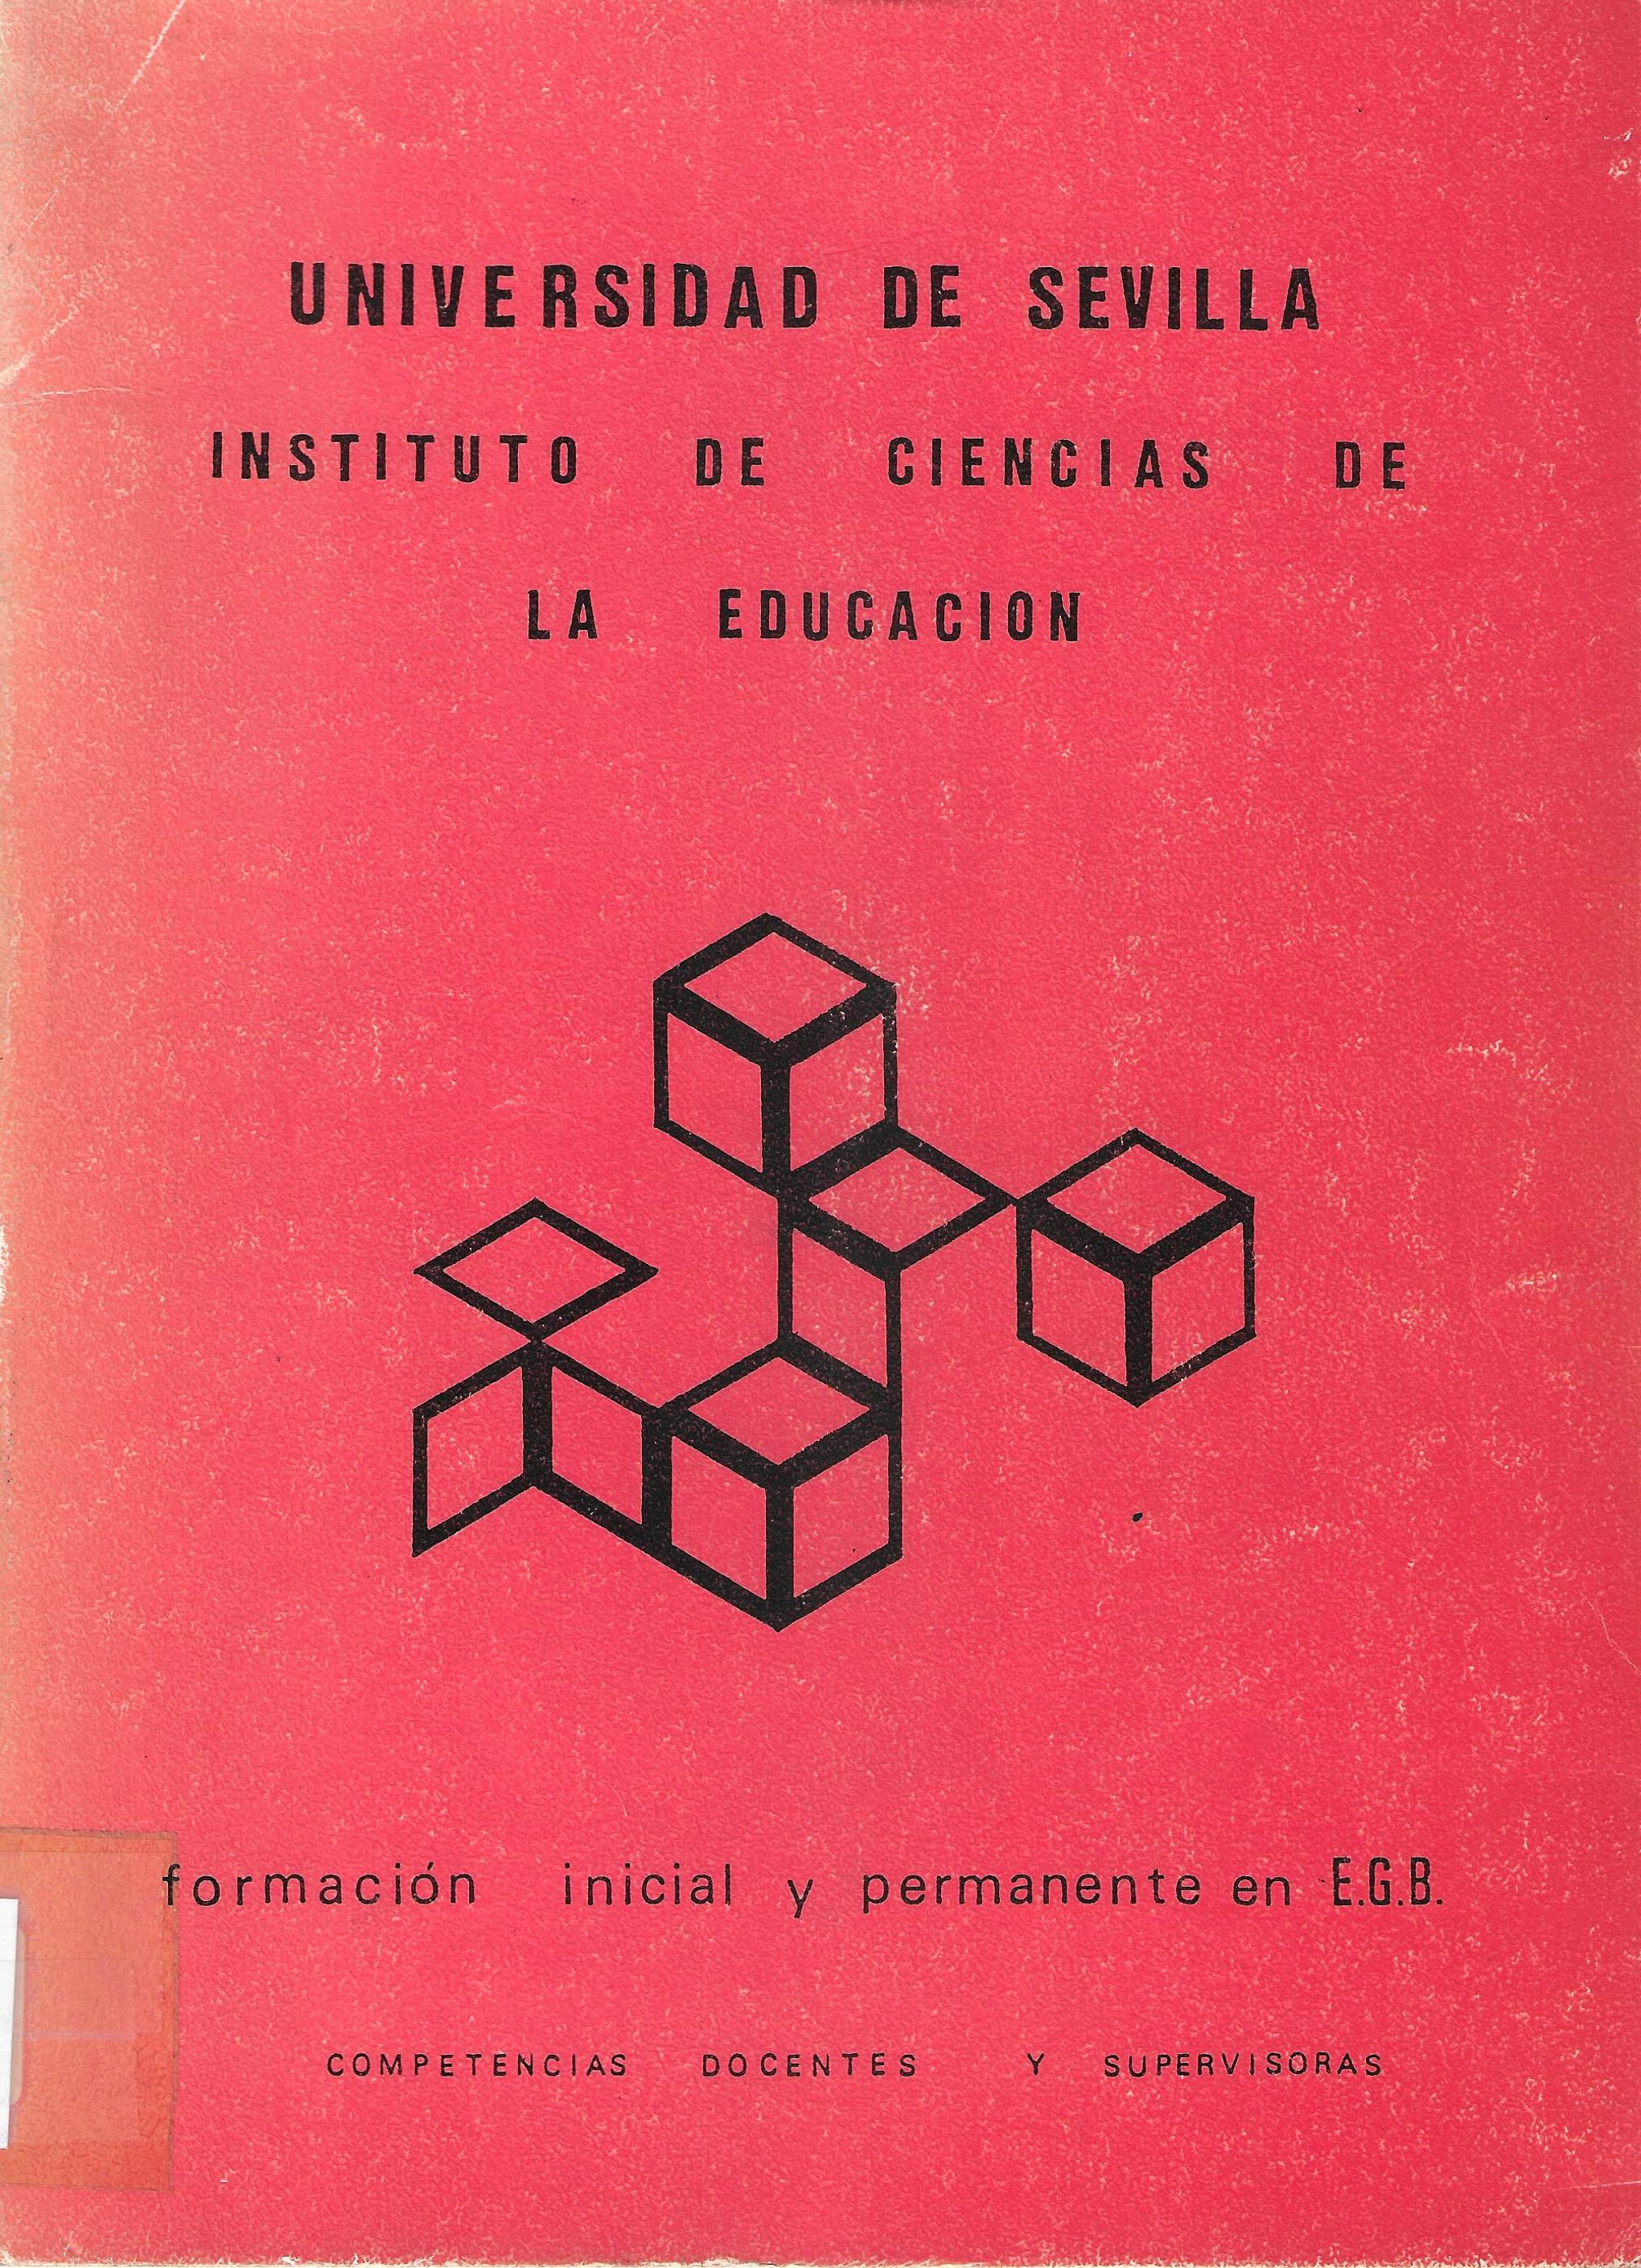 Imagen de portada del libro Formación inicial y permanente en E.G.B.